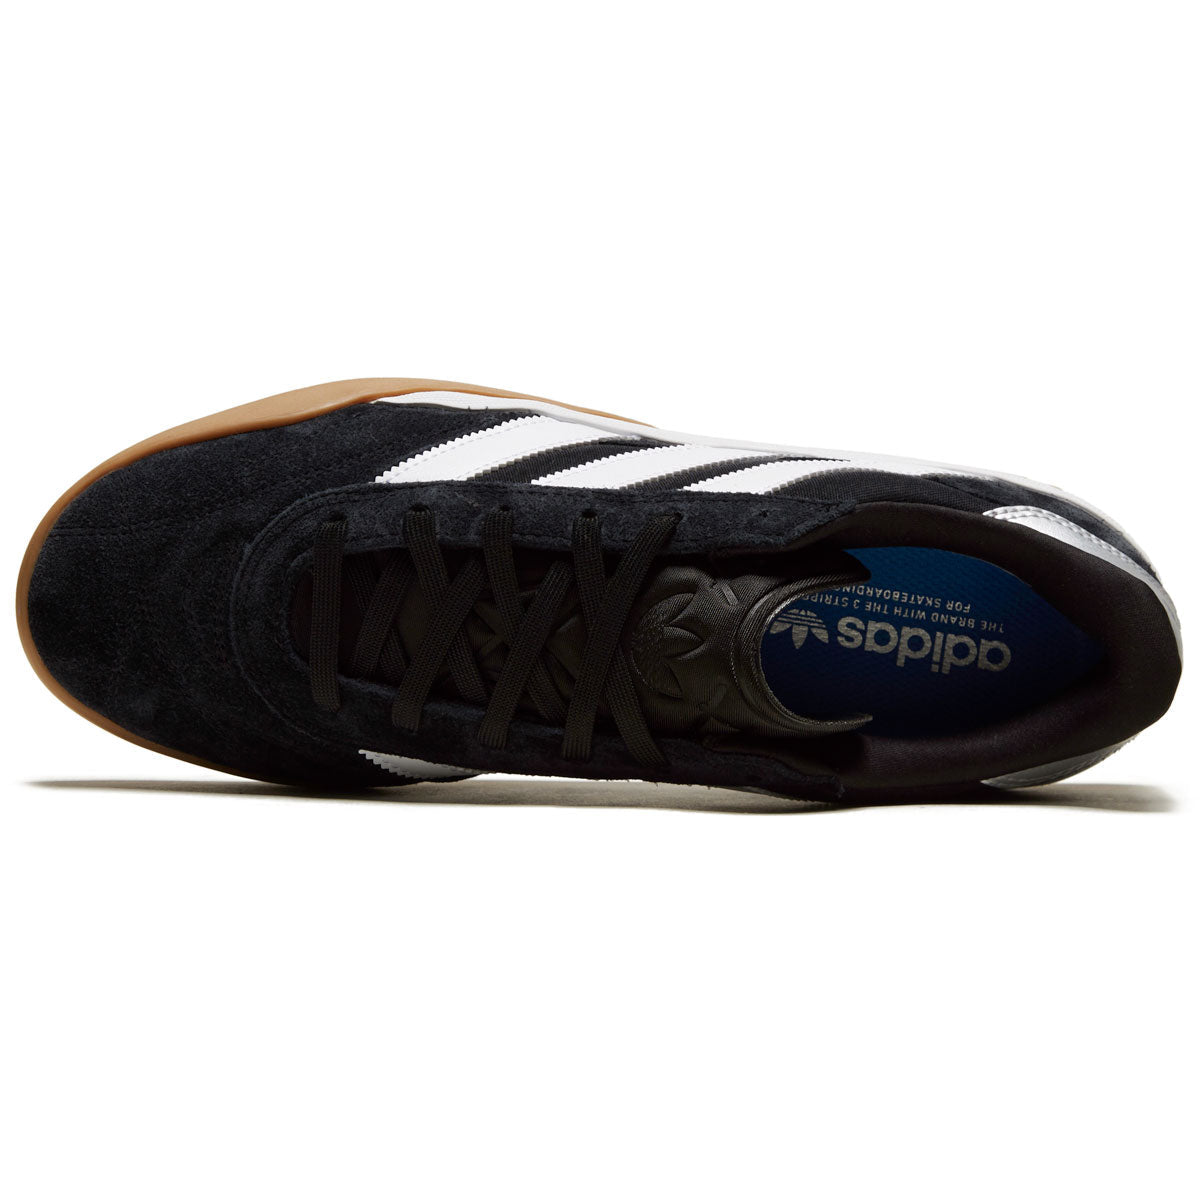 Adidas Copa Premiere Shoes - Core Black/White/Gum image 3